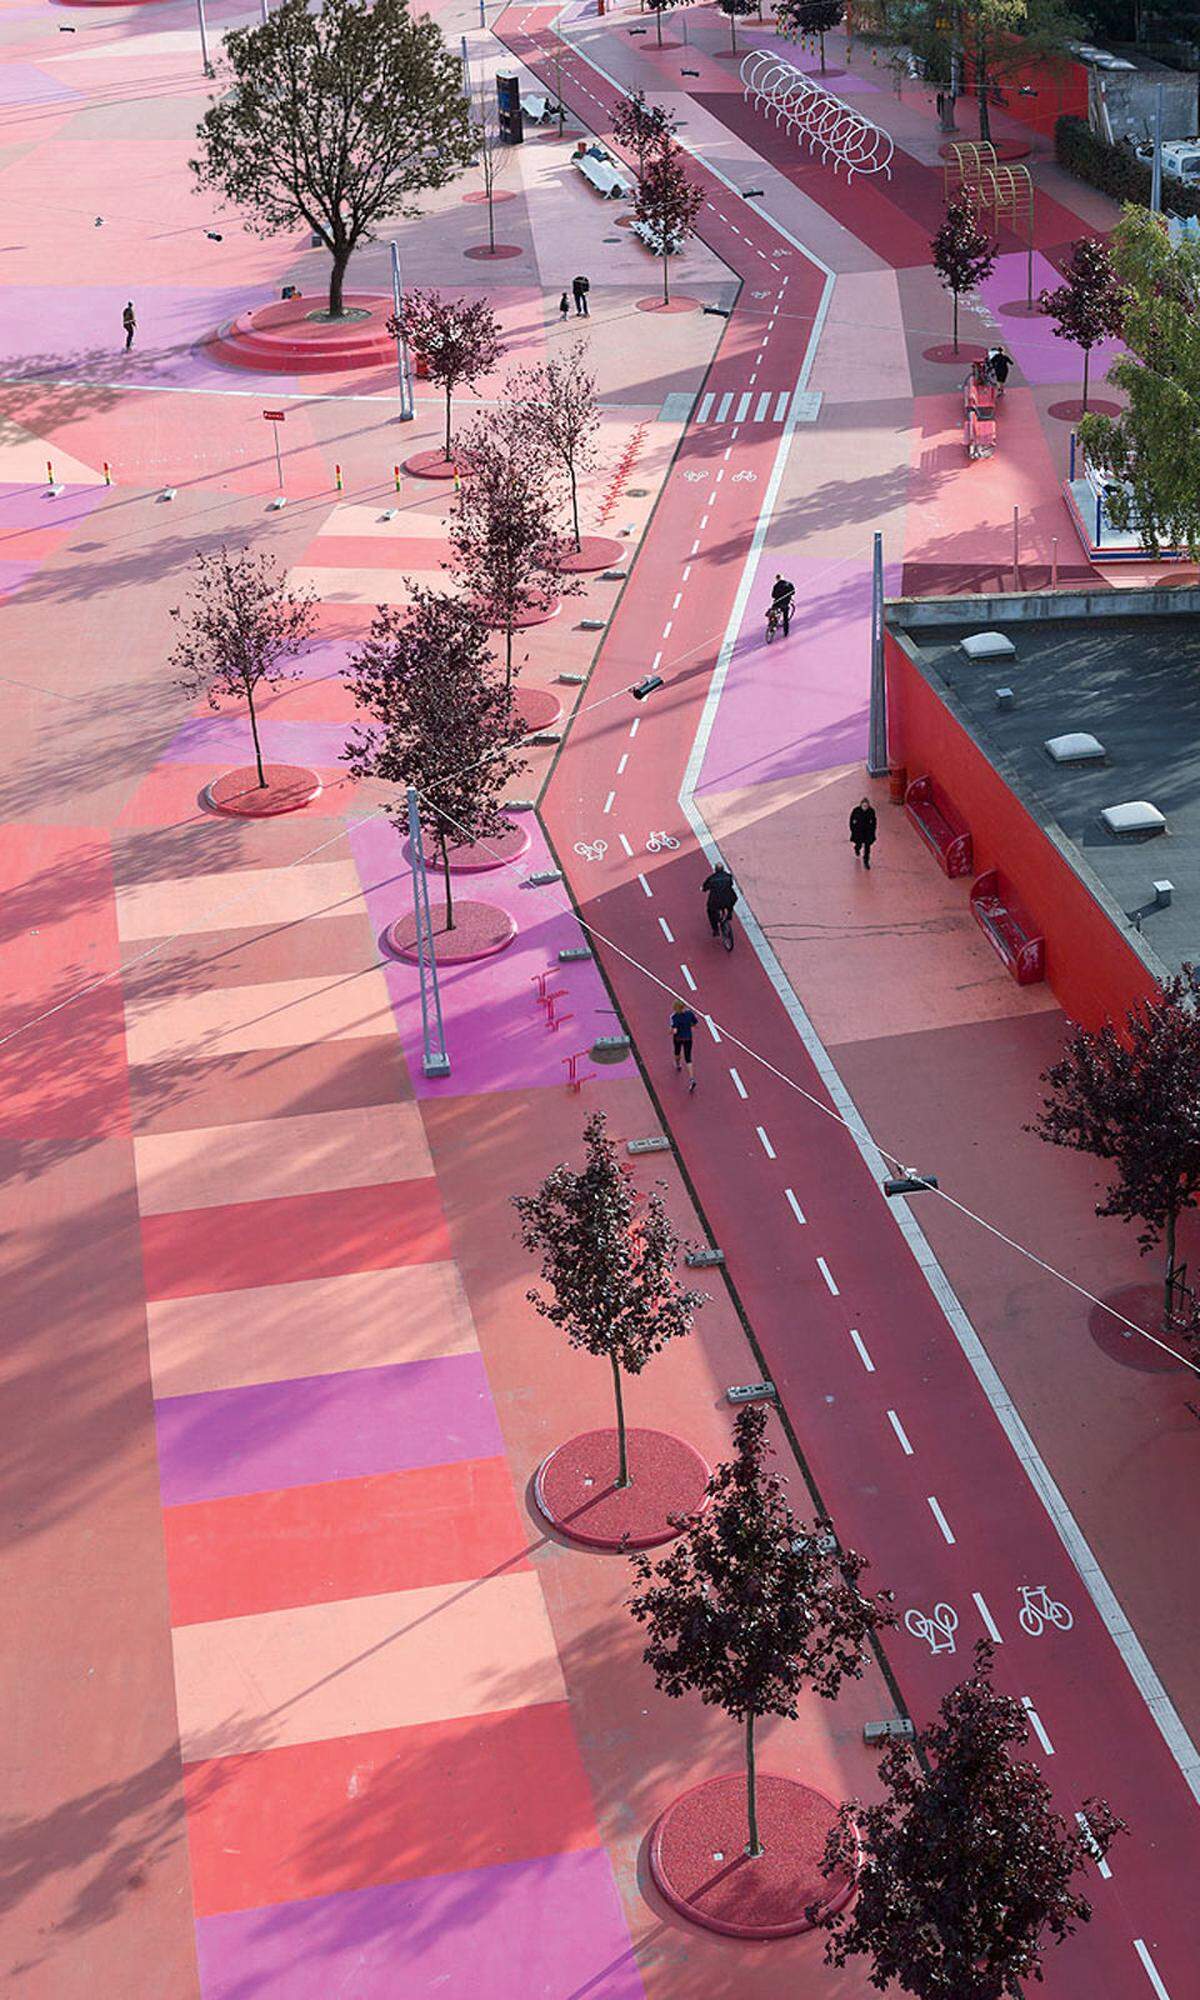 Kopenhagen. Rot, schwarz, grün: Superkilen ist Park, Platz und Verkehrsweg – zumindest für Fußgänger und Radfahrer, gestaltet vom Büro BIG.